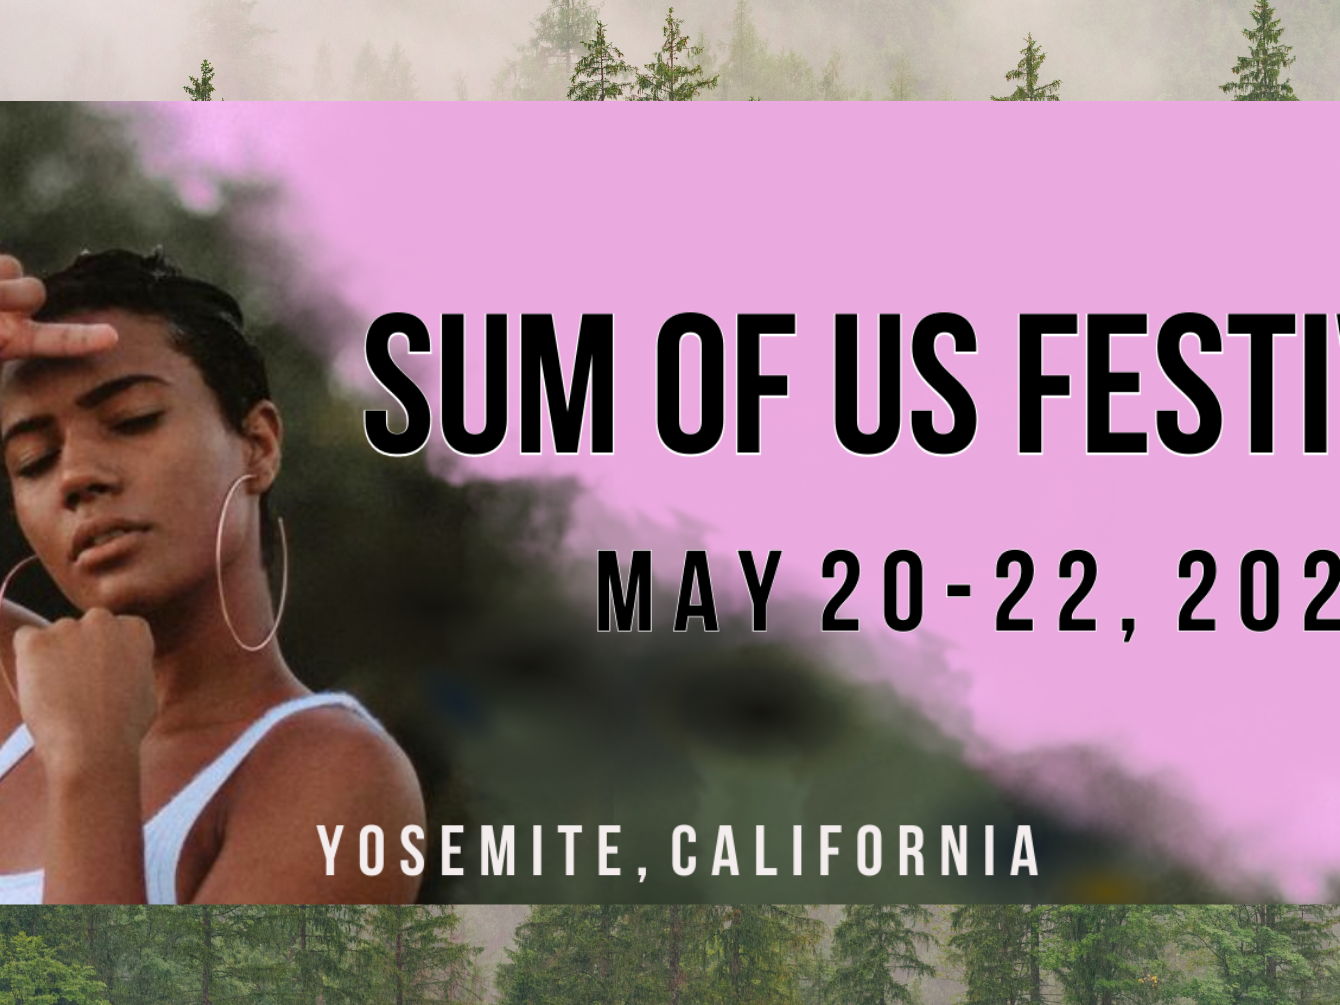 sum of us festival 5/20/22-5/22/22 yosemite california 